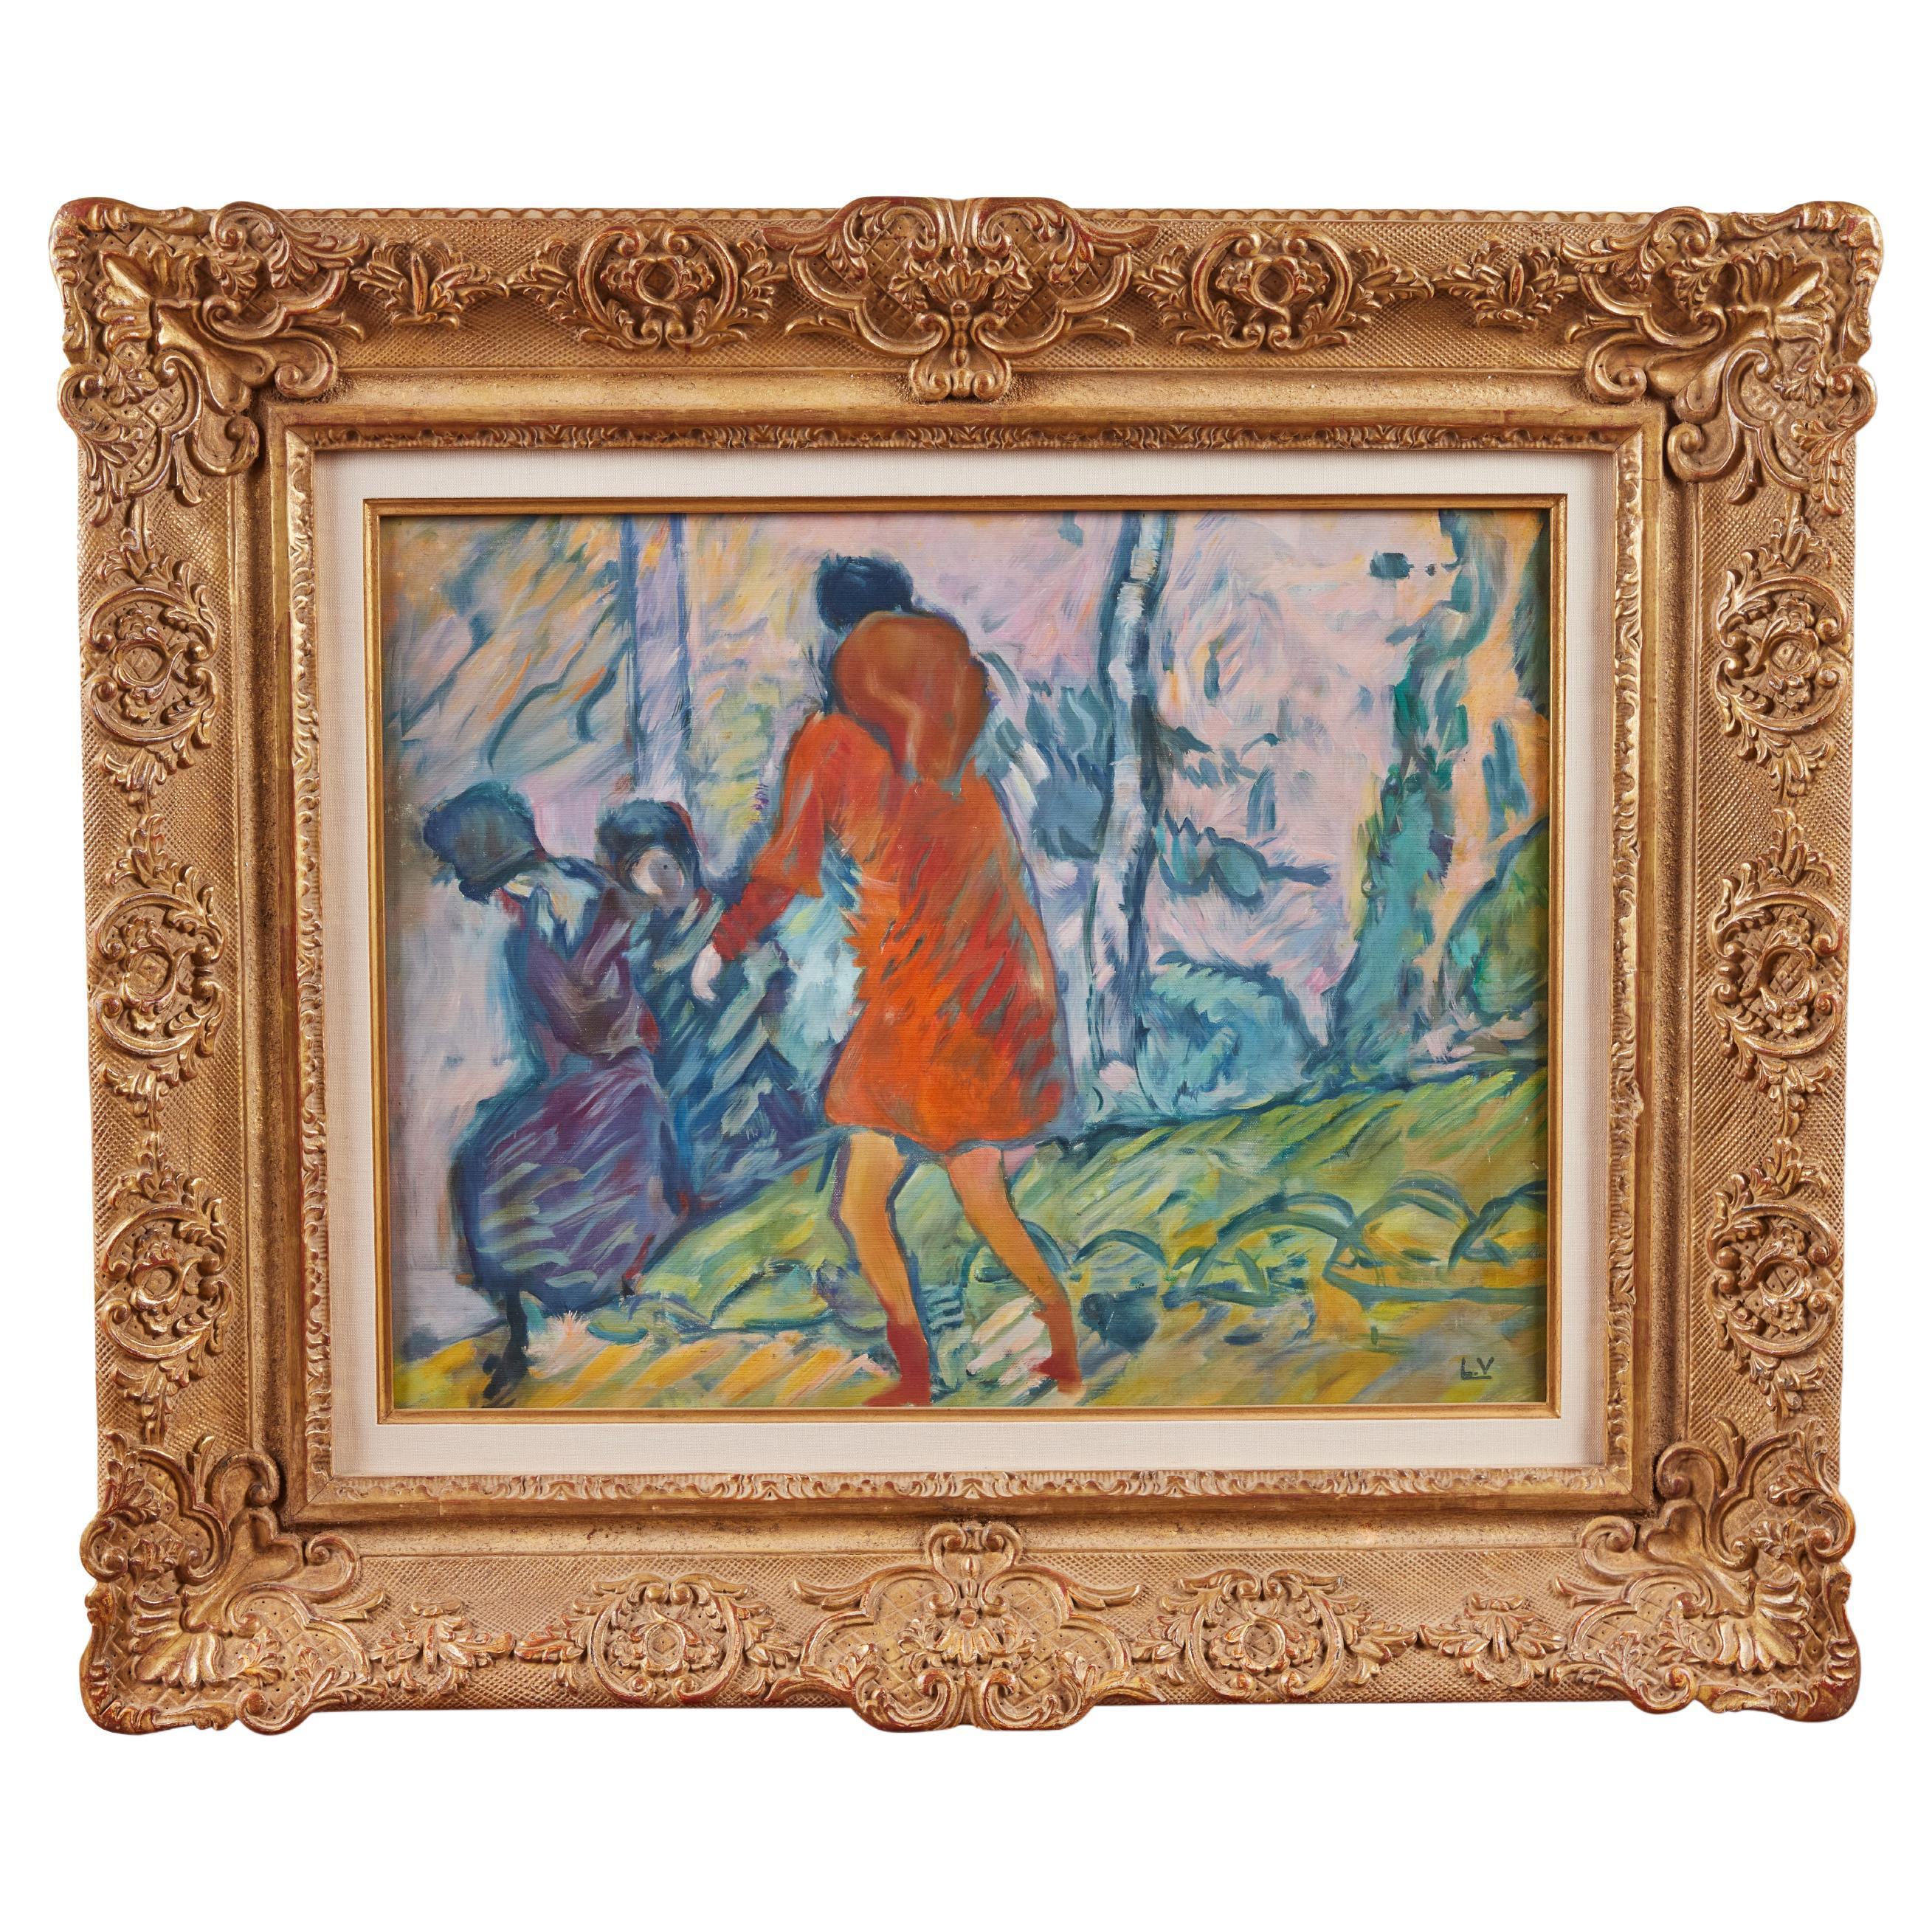 Une peinture signée, vibrante, vers 1920, huile sur toile, "Promenade Dans Le Bois" par l'important artiste répertorié Louis Valtat (1869-1952). Le fils de l'artiste, Louis-André Valtat, a confirmé l'authenticité de cette œuvre qui figurera dans le